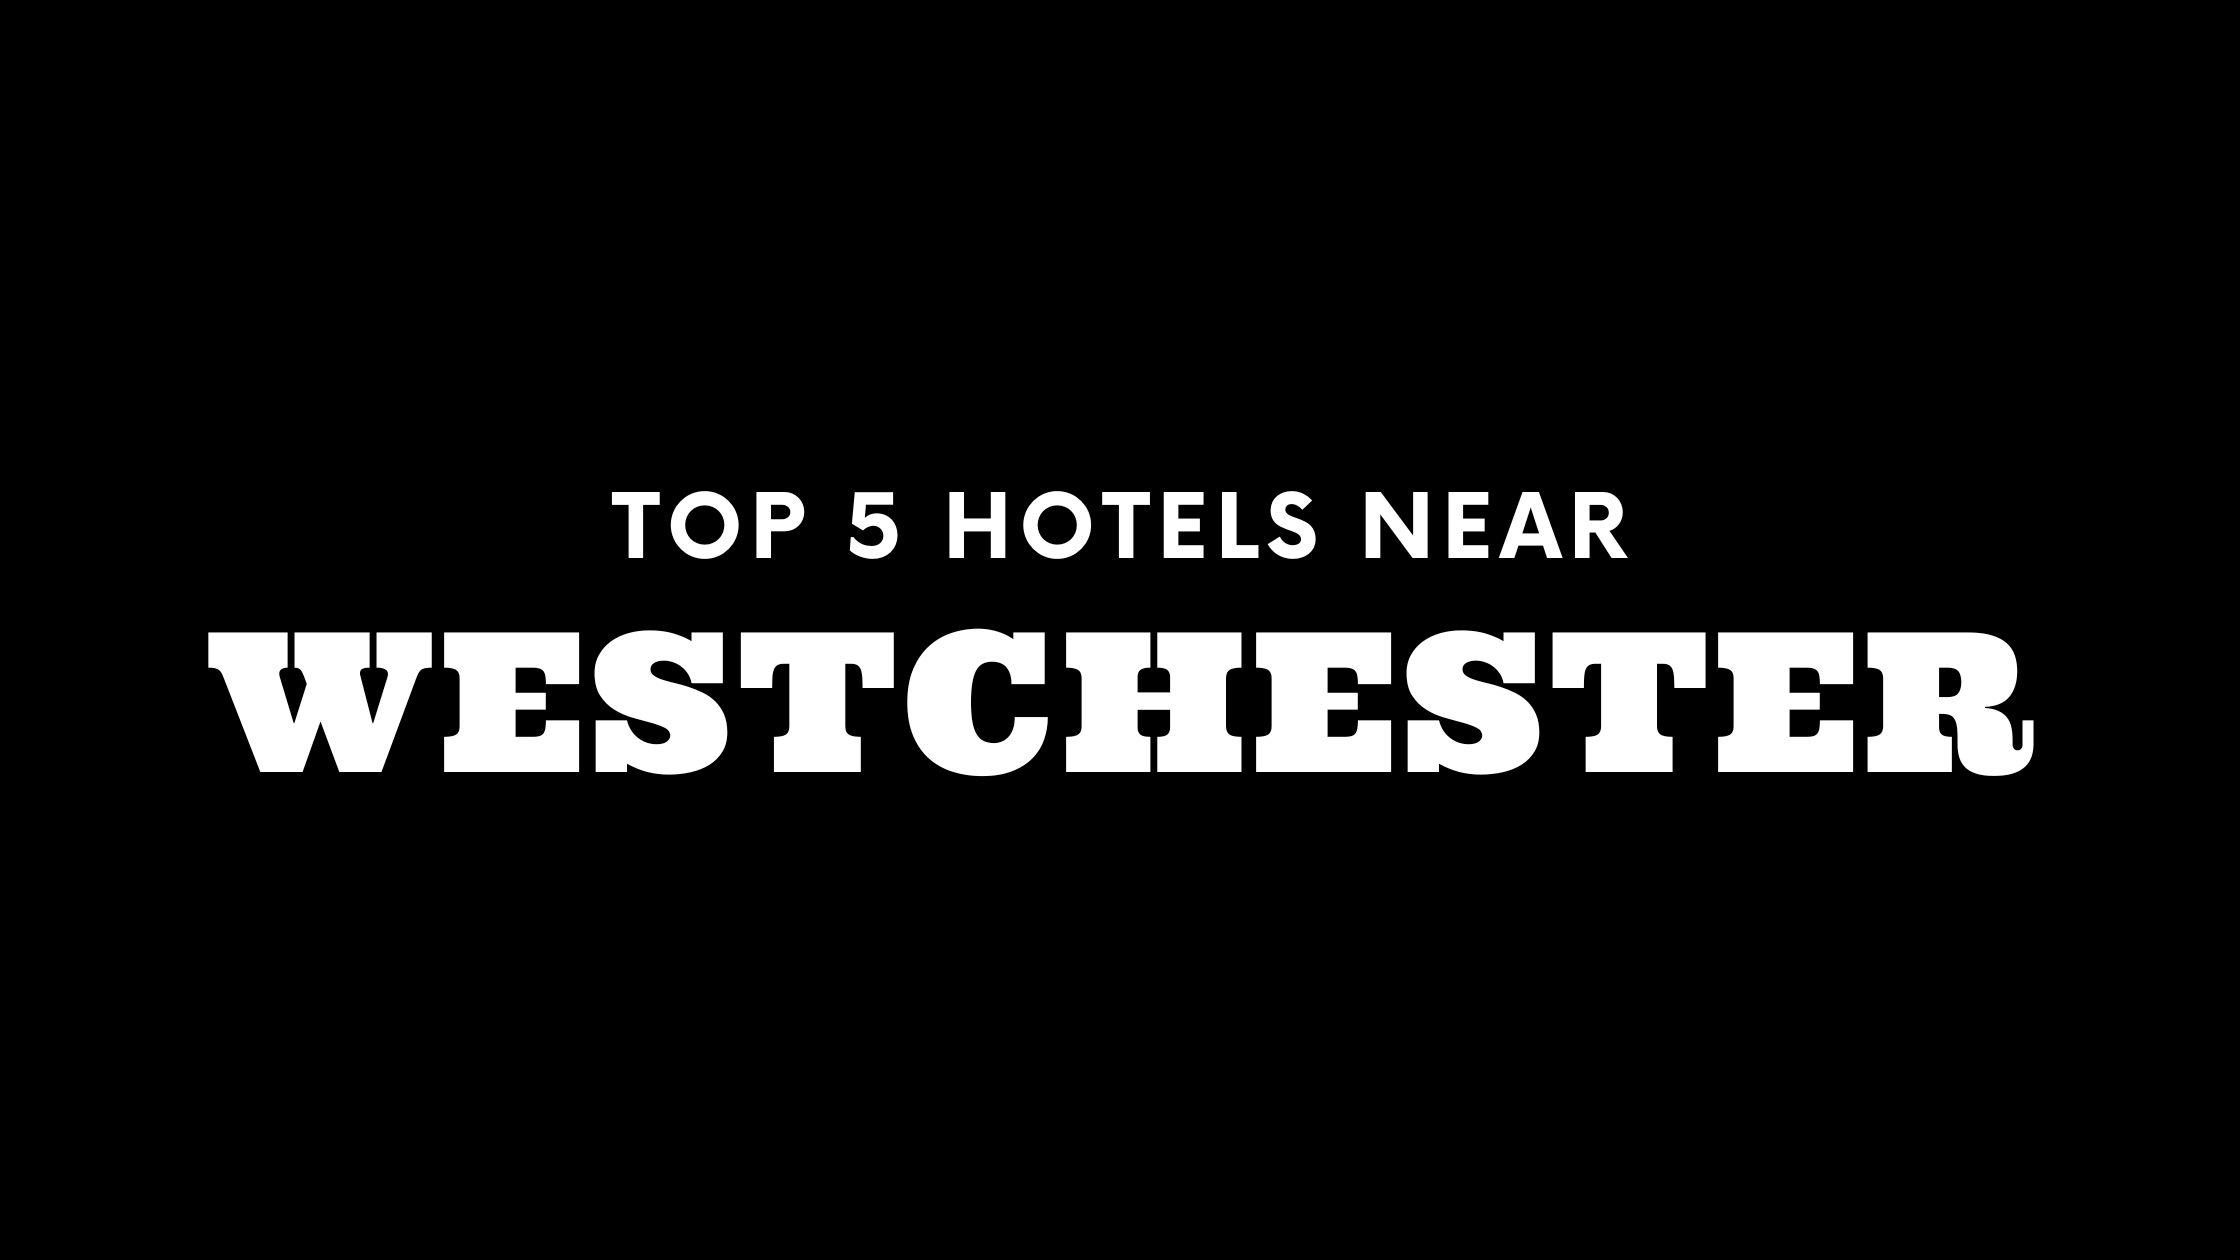 Top 5 Hotels Near Westchester